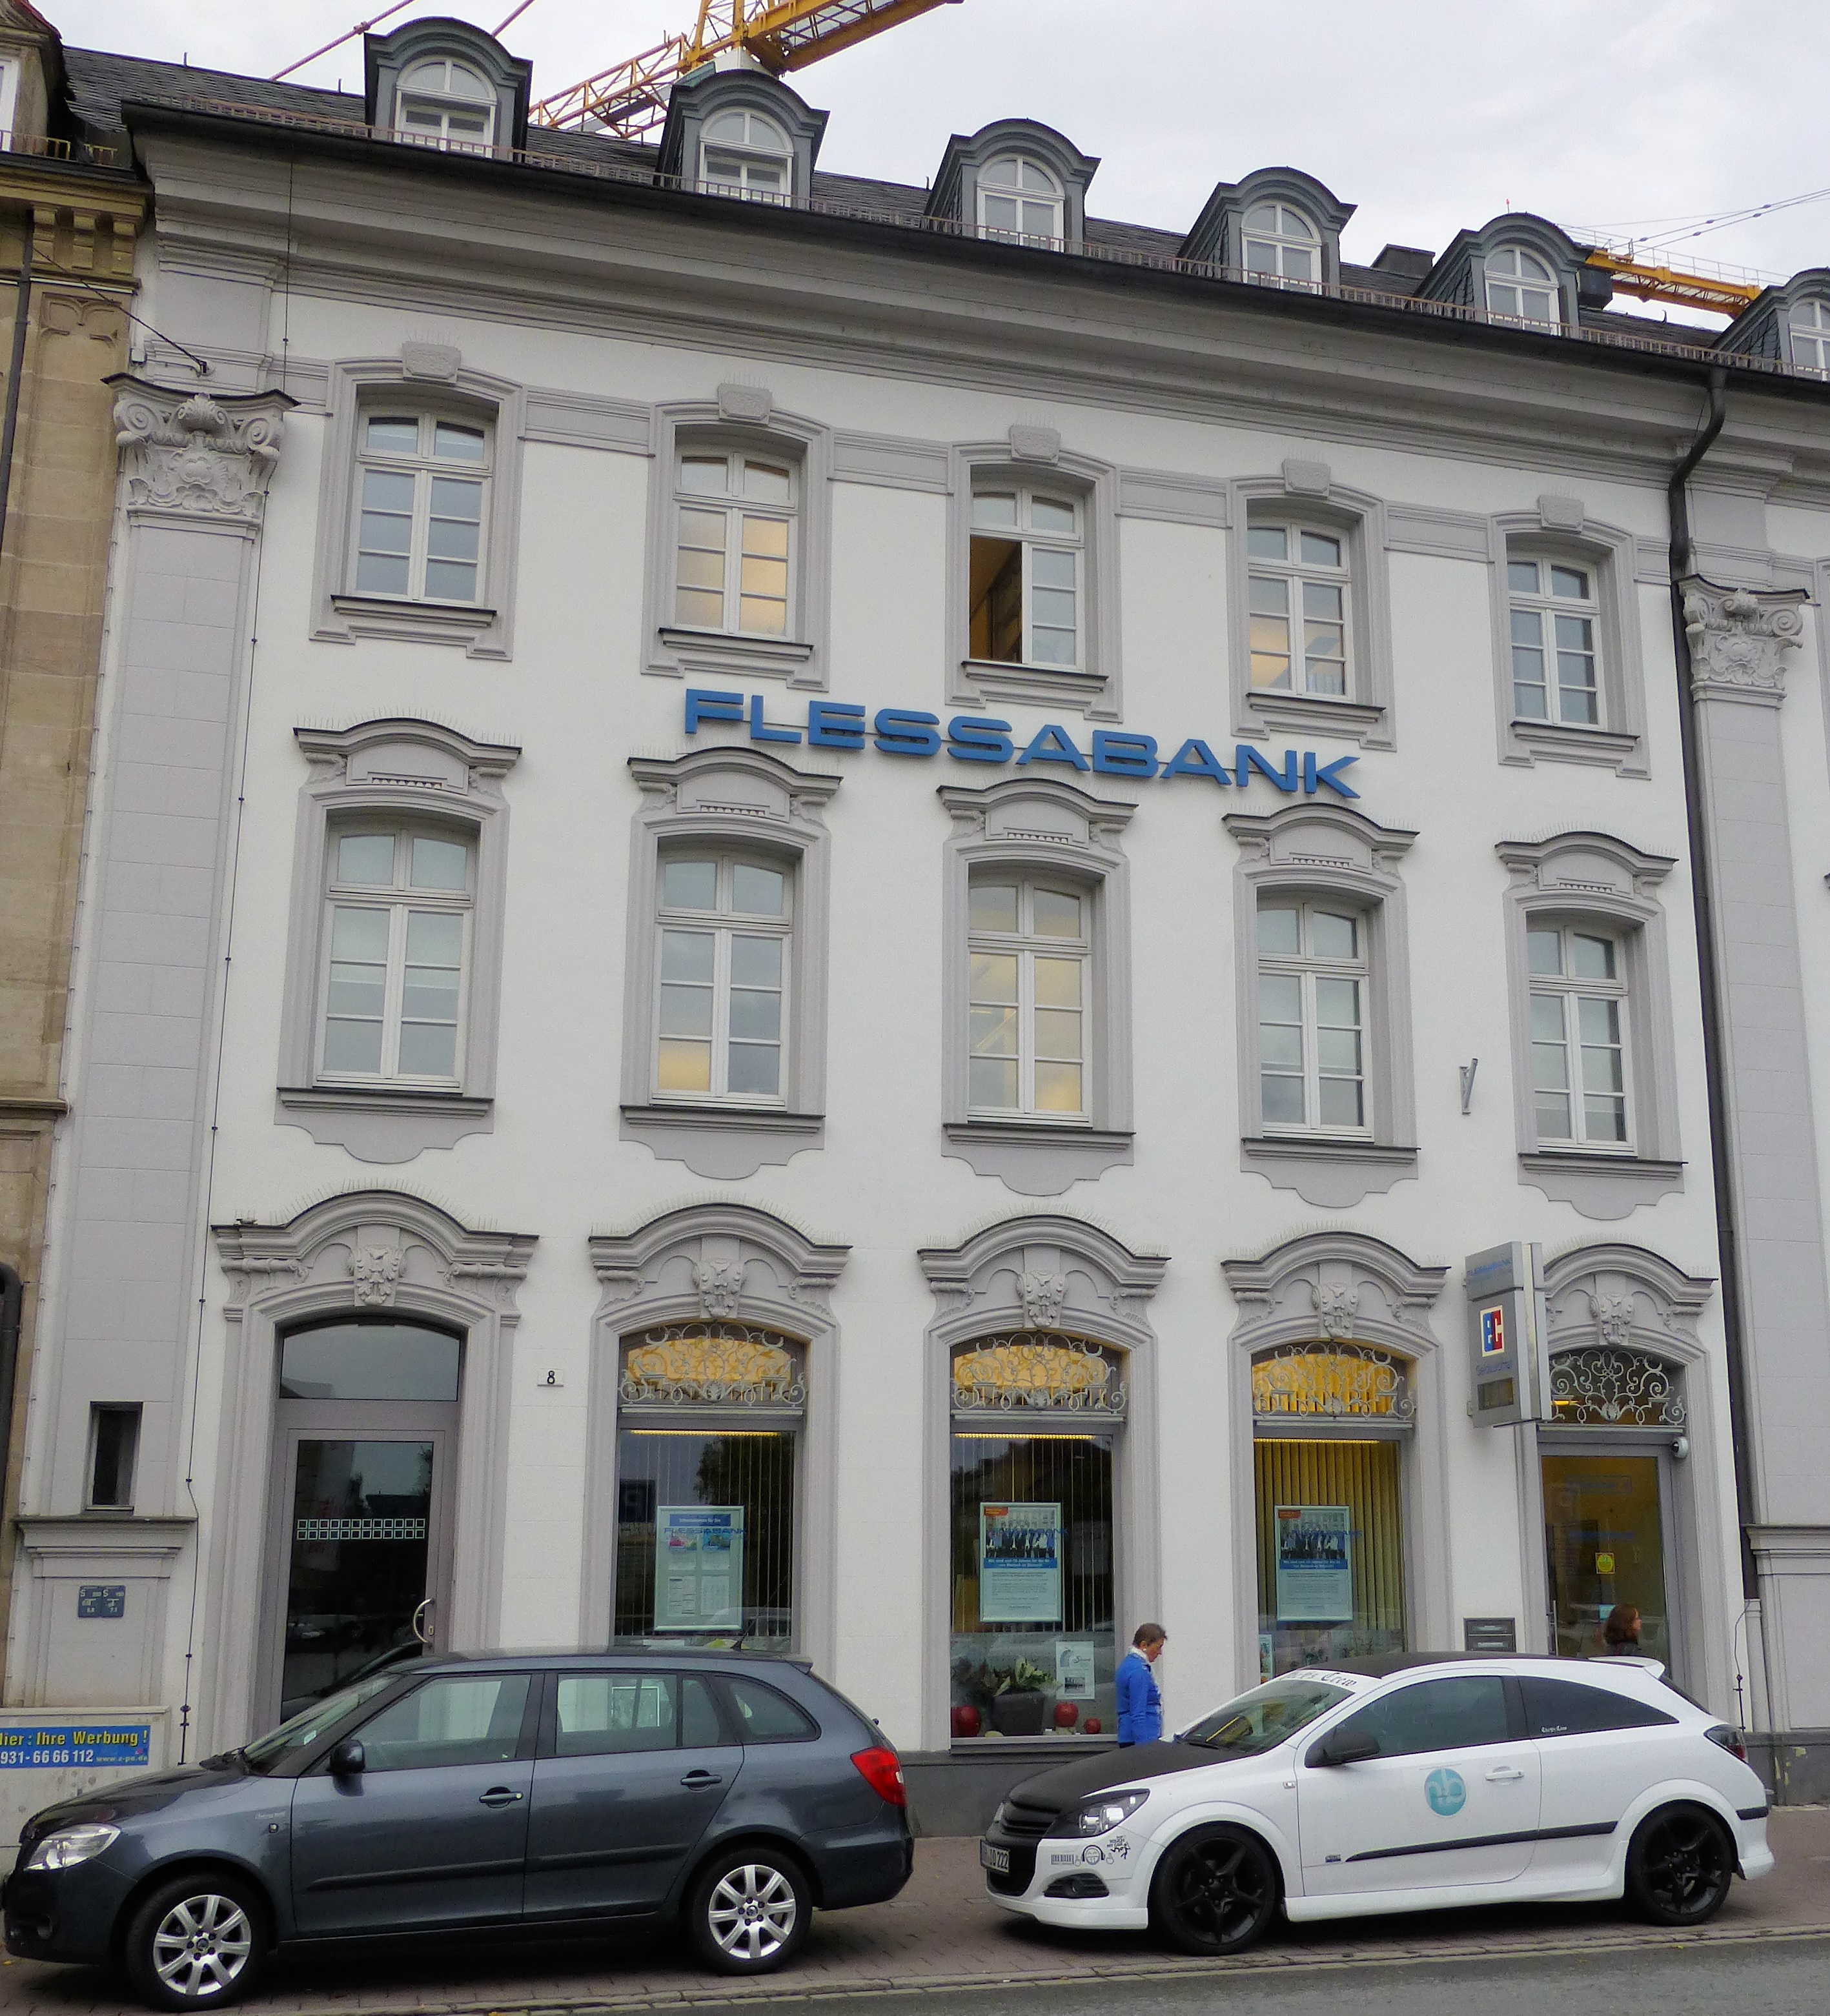 Bild 1 Flessabank - Bankhaus Max Flessa KG in Fürth